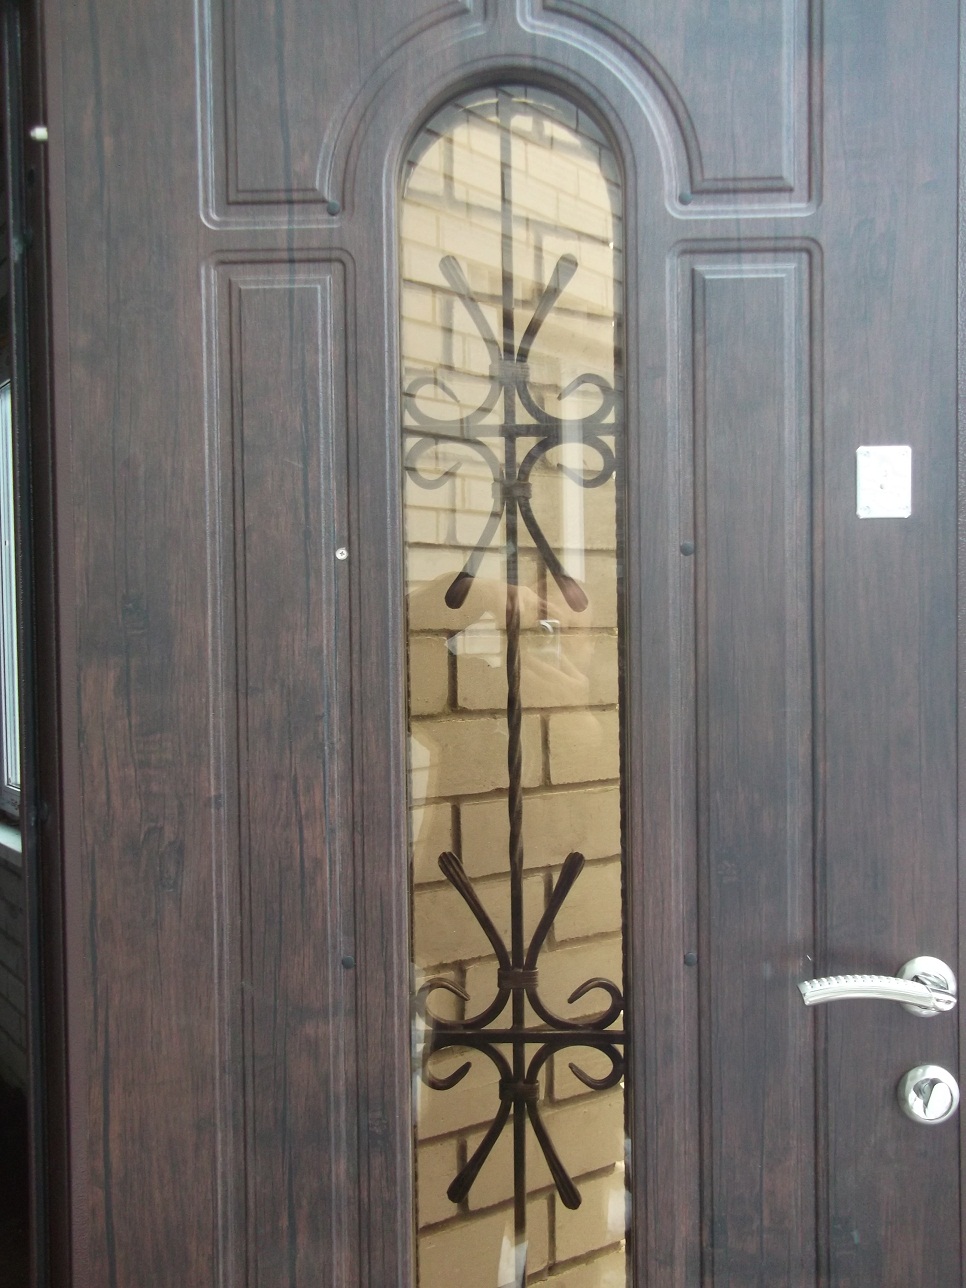 Специфичность производства наших теплых входных дверей изготовленных по размерам заказчика.